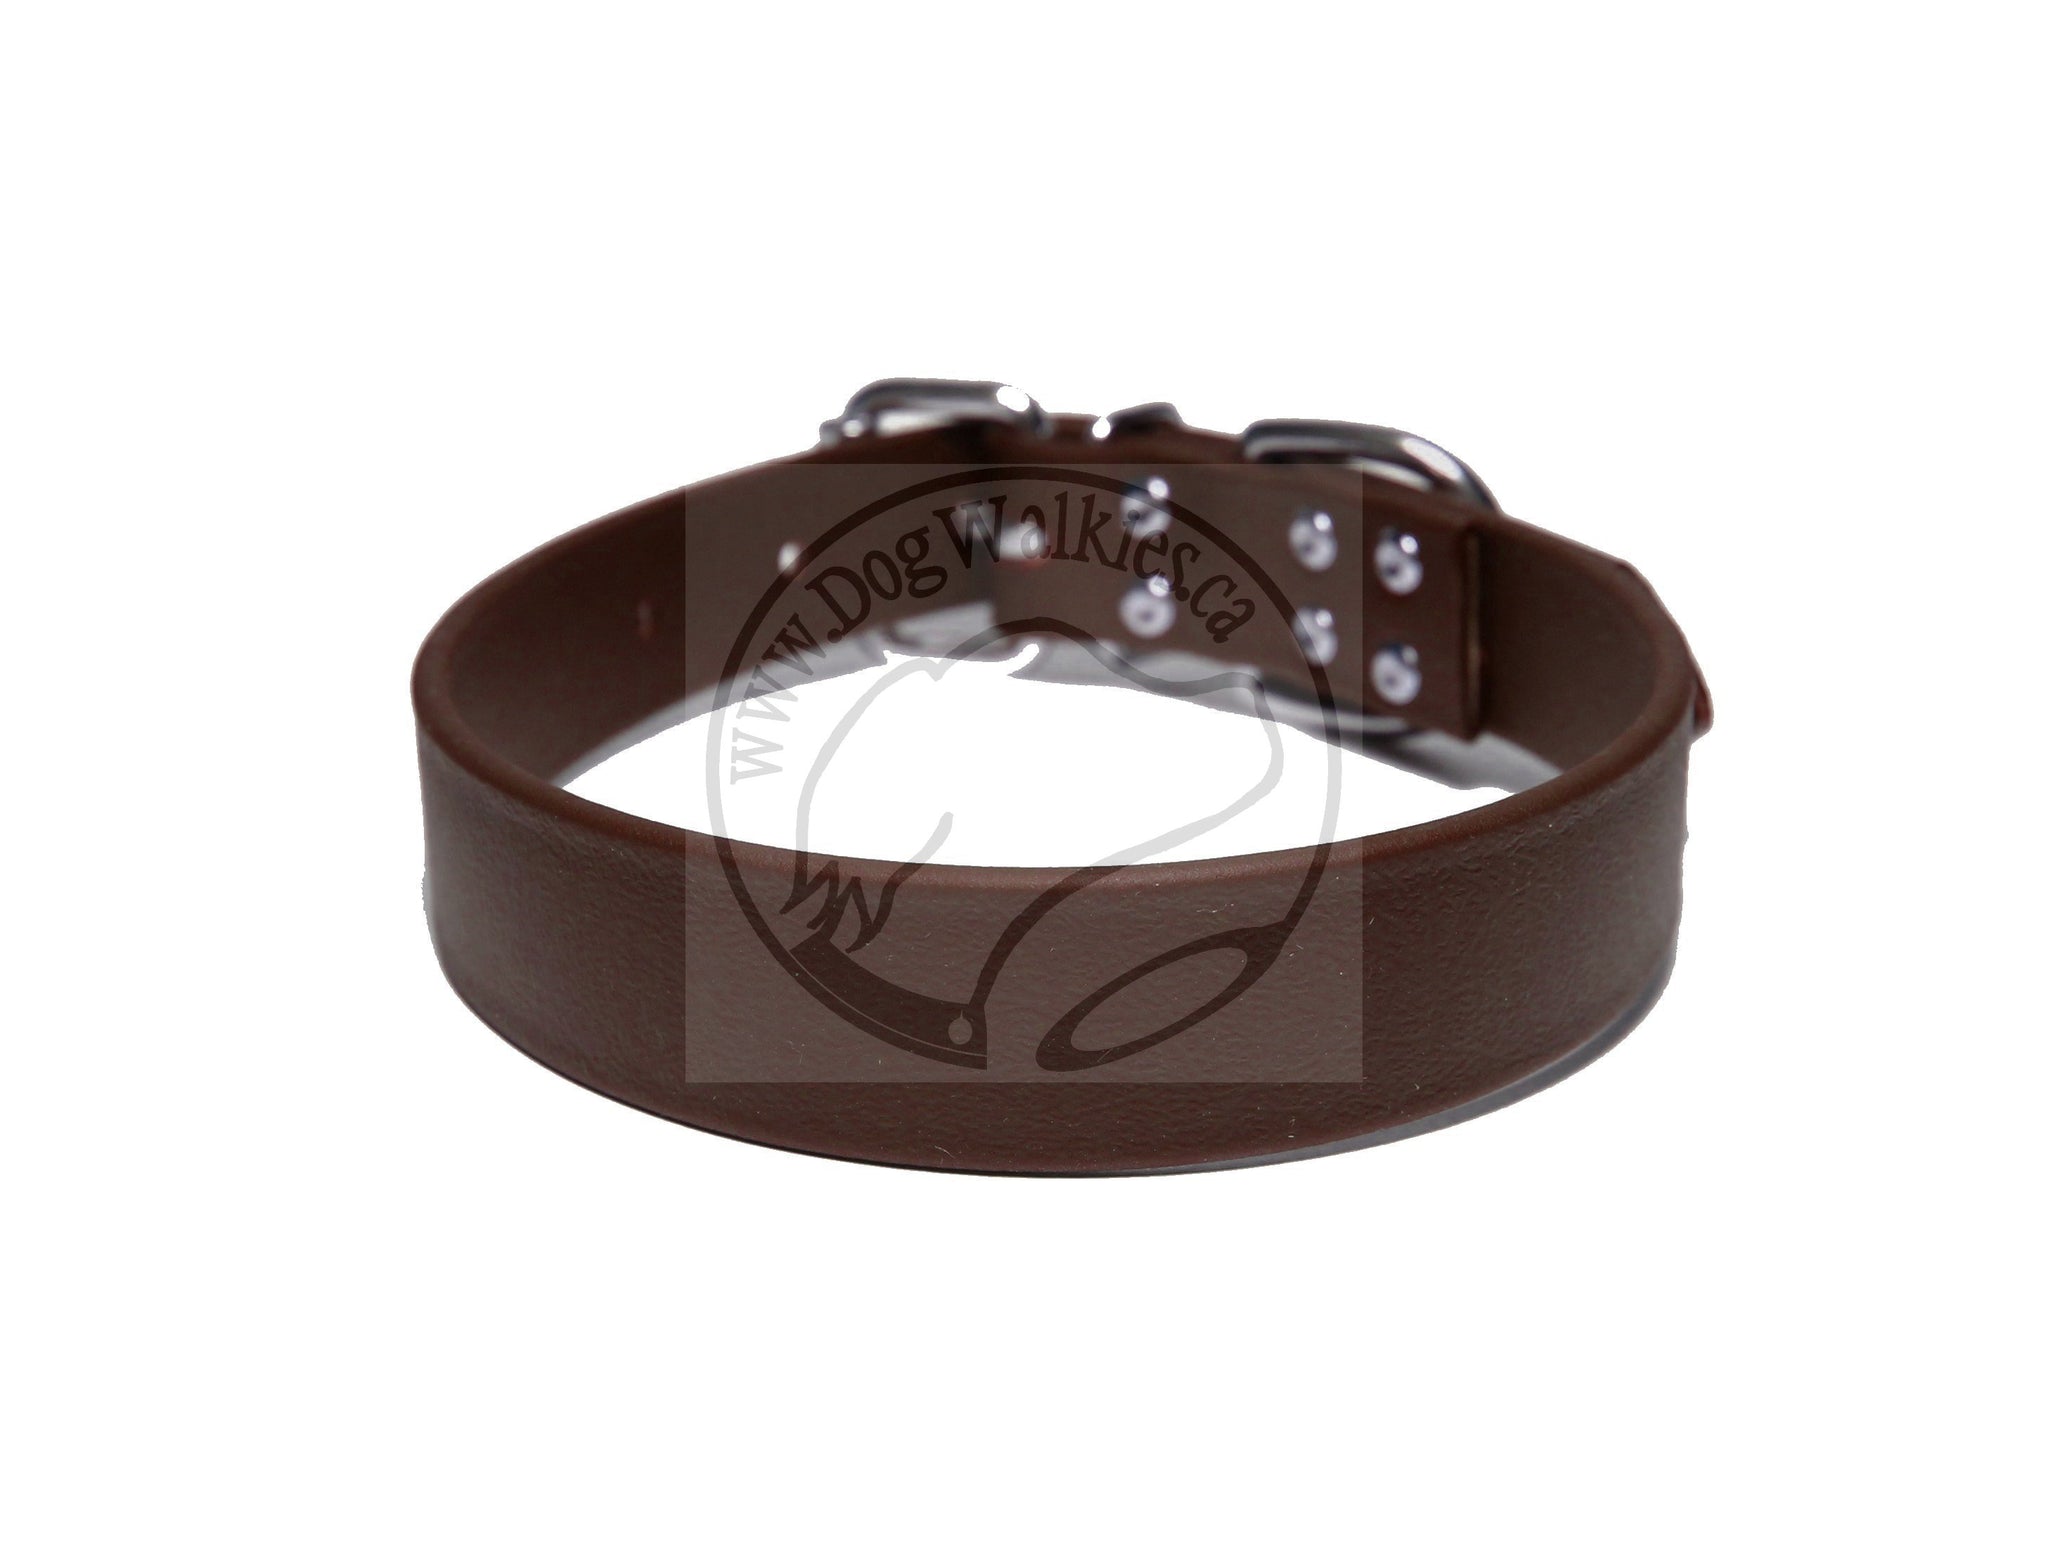 Dark Chocolate Brown Biothane Dog Collar - 1 inch (25mm) wide